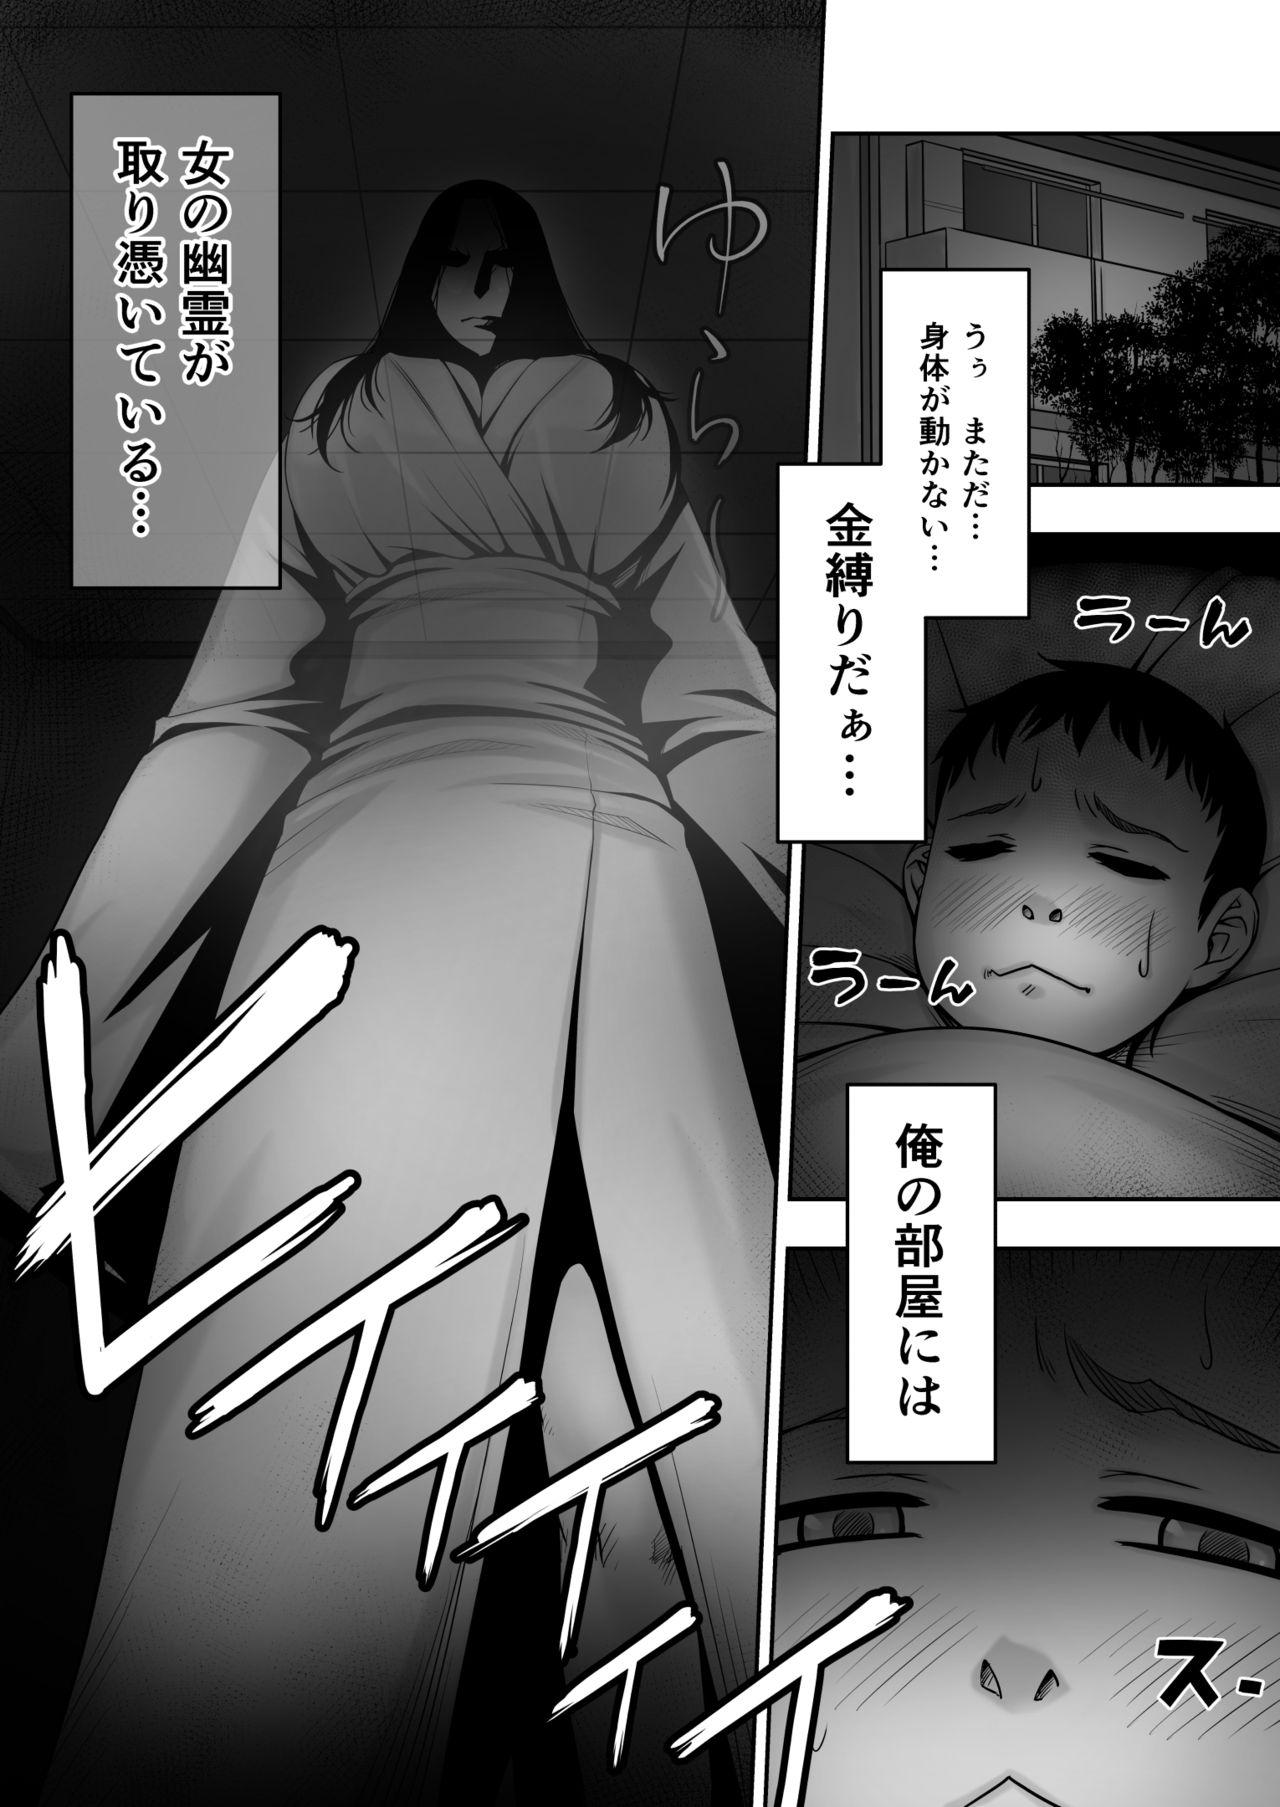 Hetero Dōtei ga heya ni tori tsuite iru on'na yūrei ni gyaku kanashibari o kaketa kekka - Original Sex - Page 2